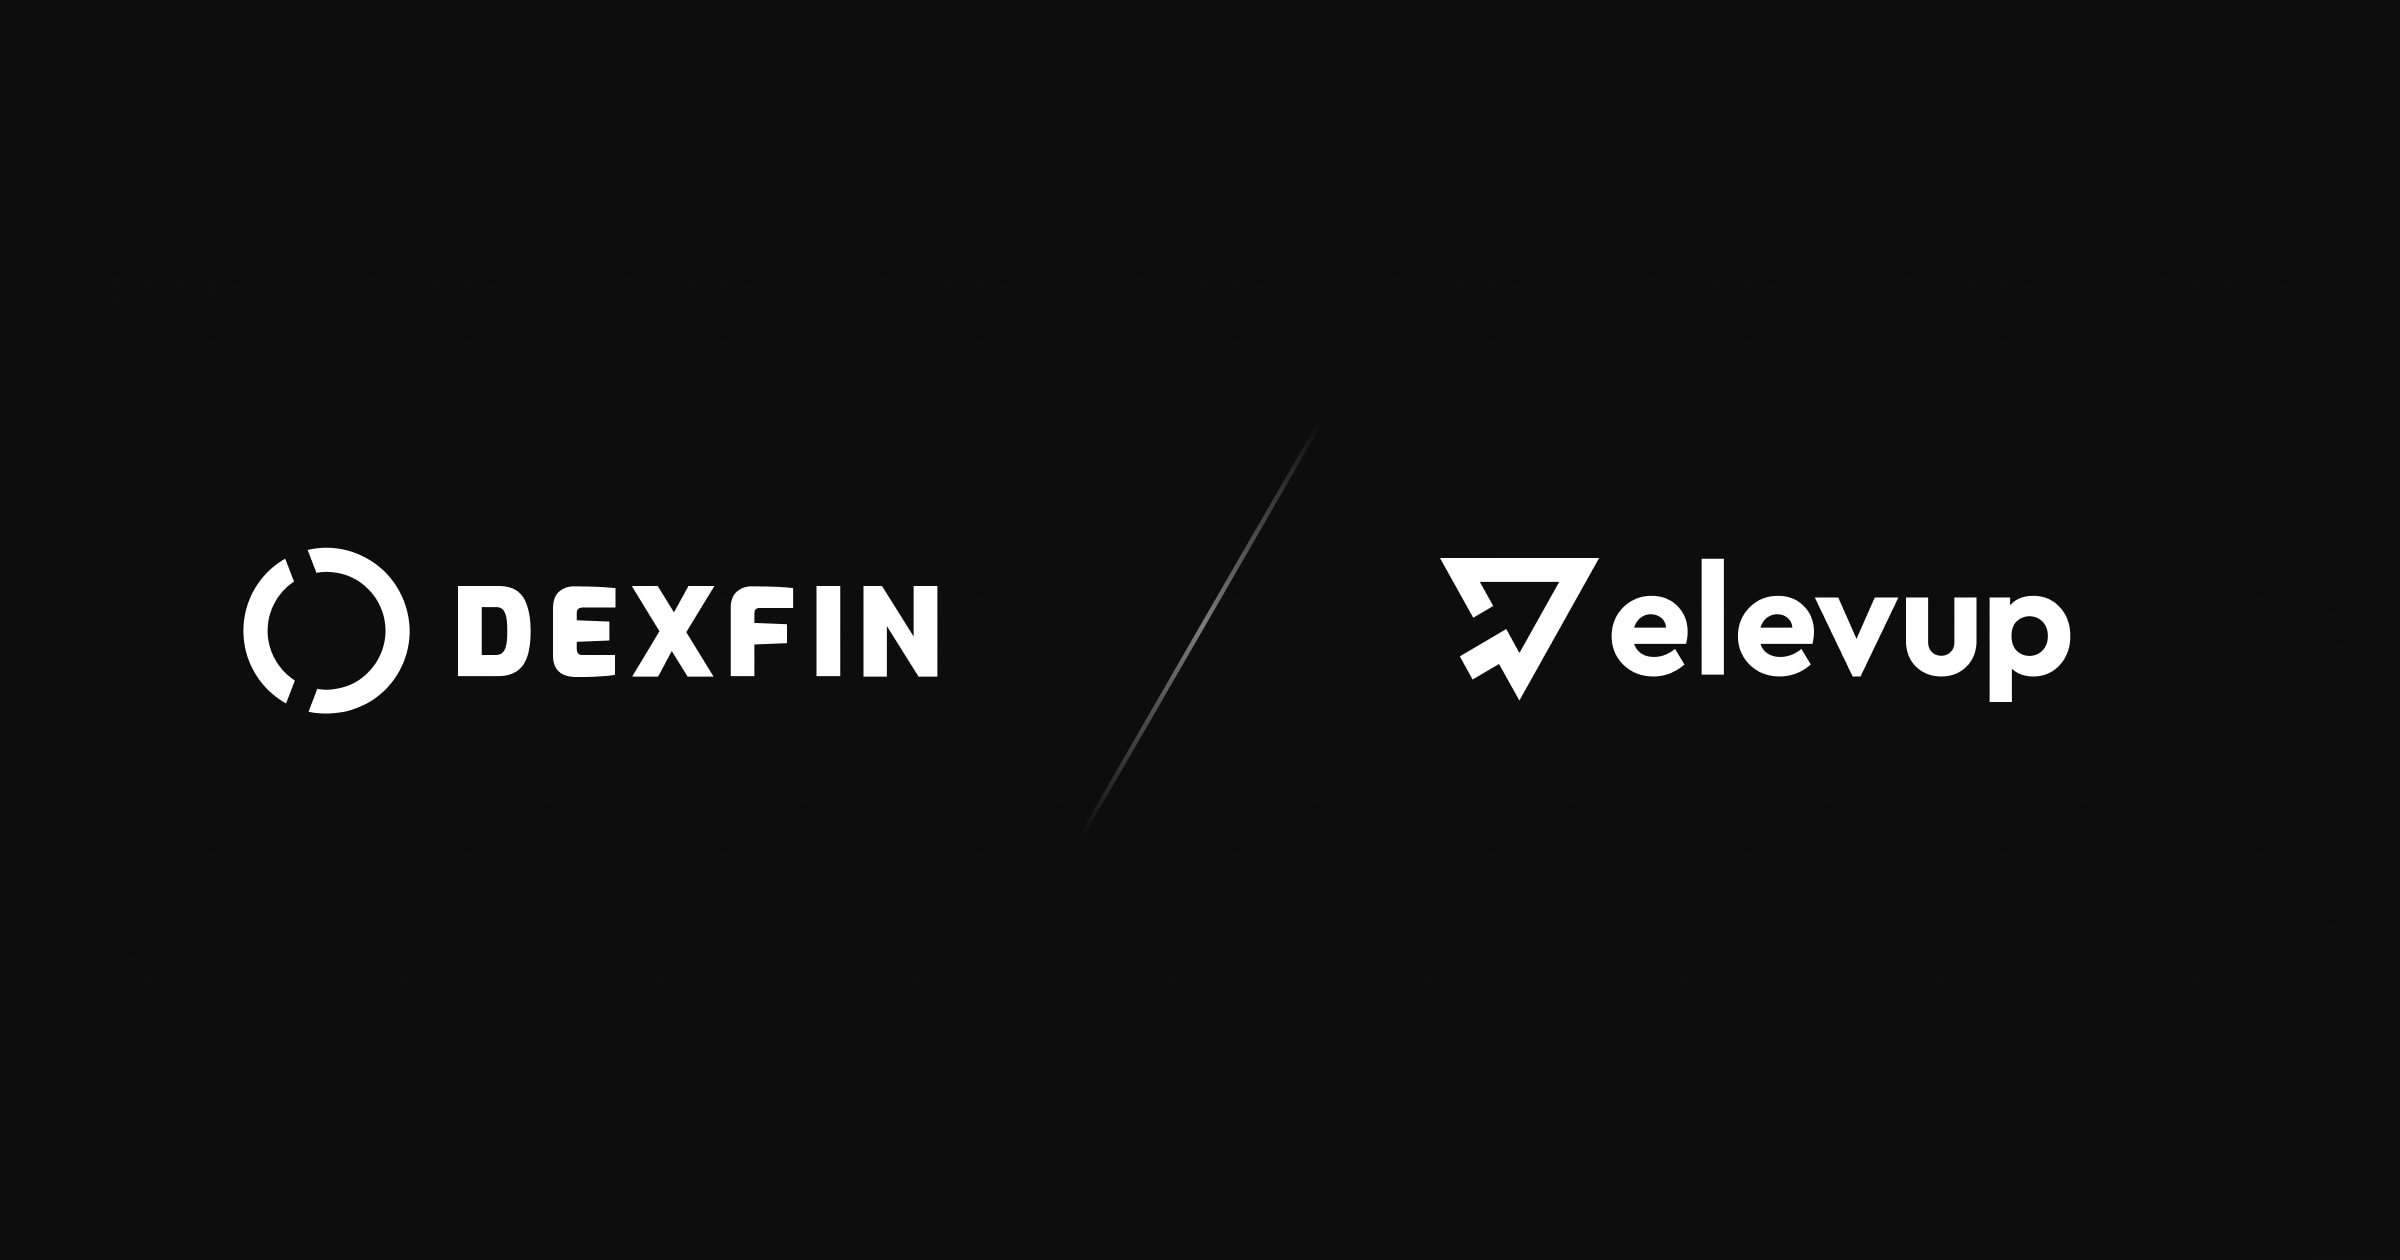 The FinTech revolutionary DEXFIN hires elevup as their new software developer